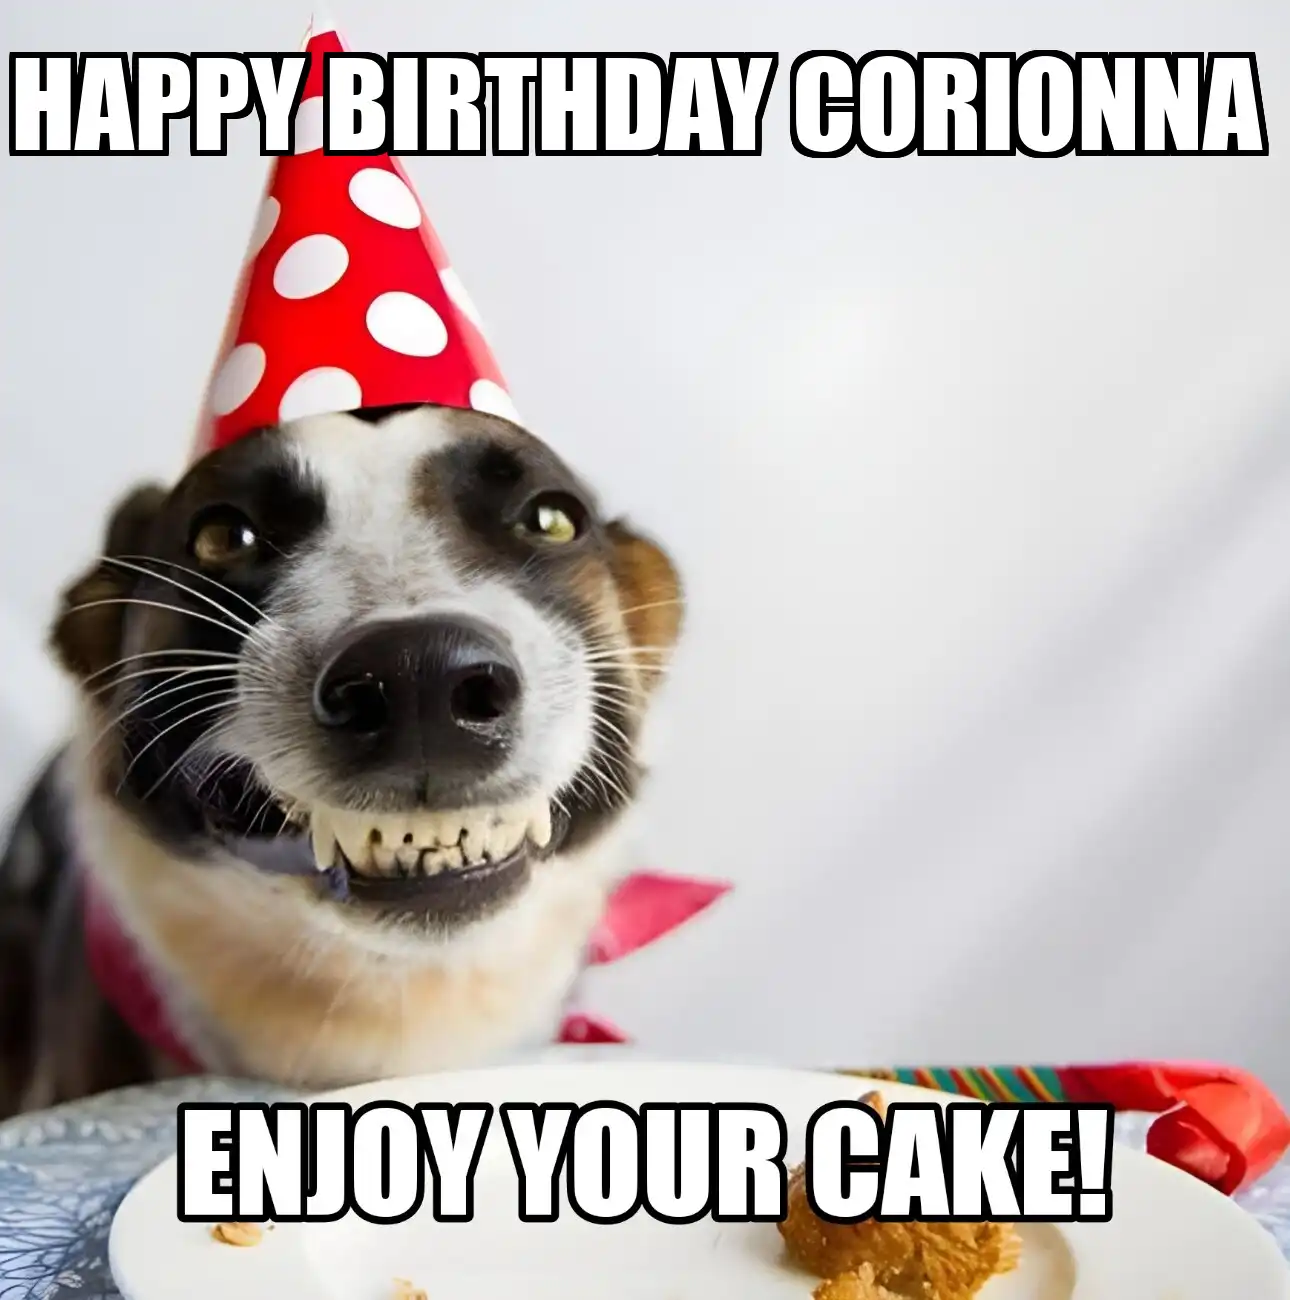 Happy Birthday Corionna Enjoy Your Cake Dog Meme